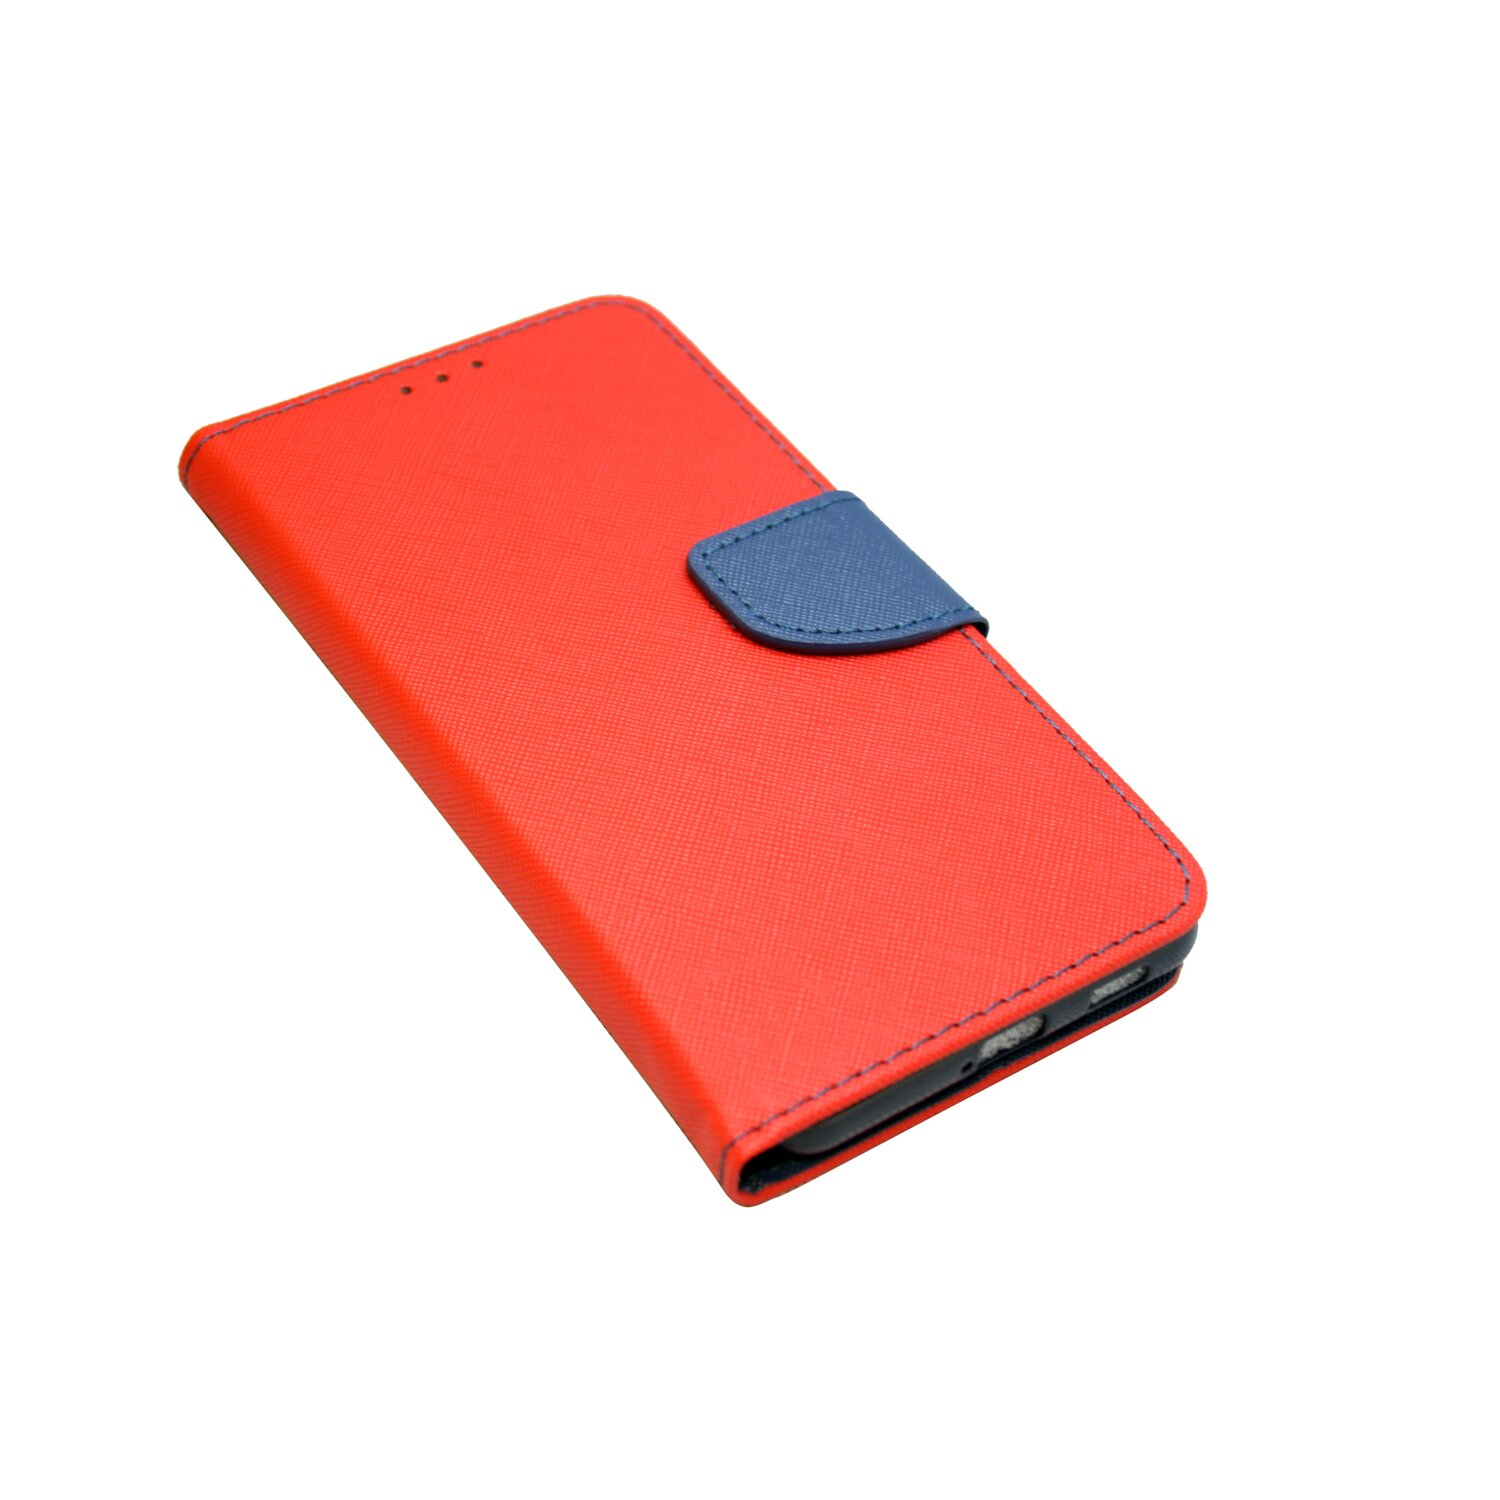 S21 Buch-Tasche, Rot-Blau Samsung, COFI Galaxy FE, Bookcover,